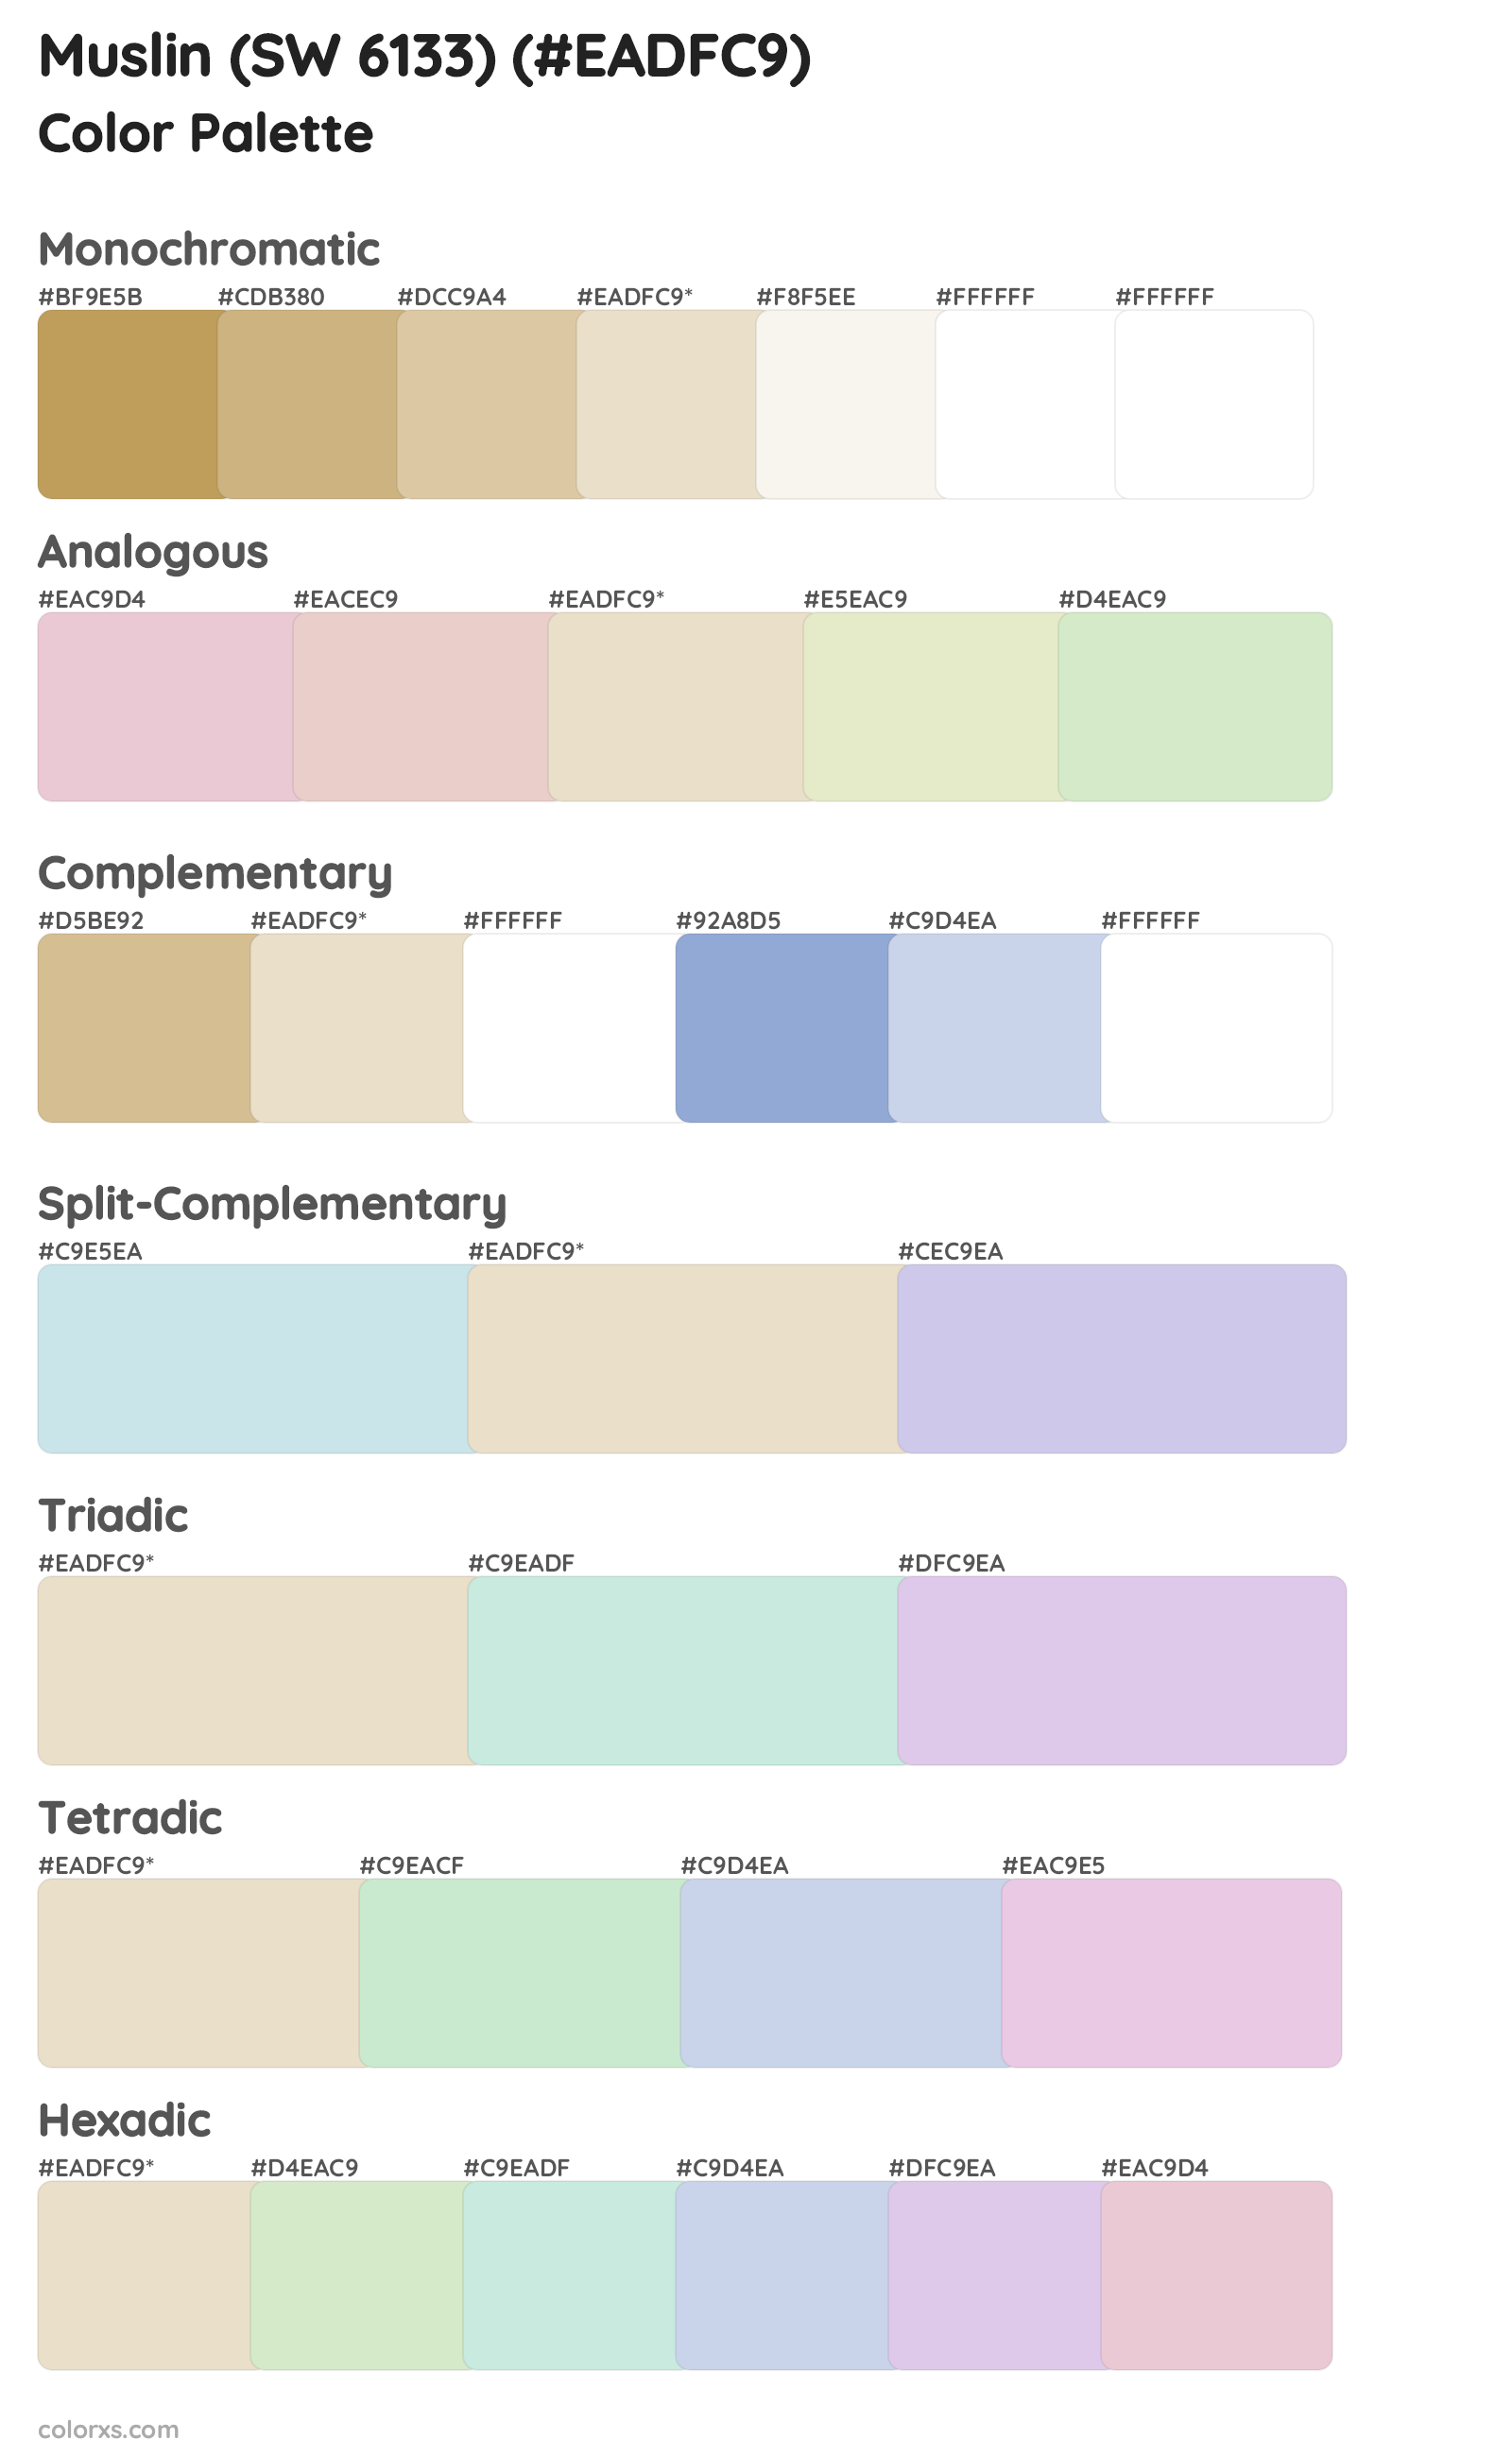 Muslin (SW 6133) Color Scheme Palettes